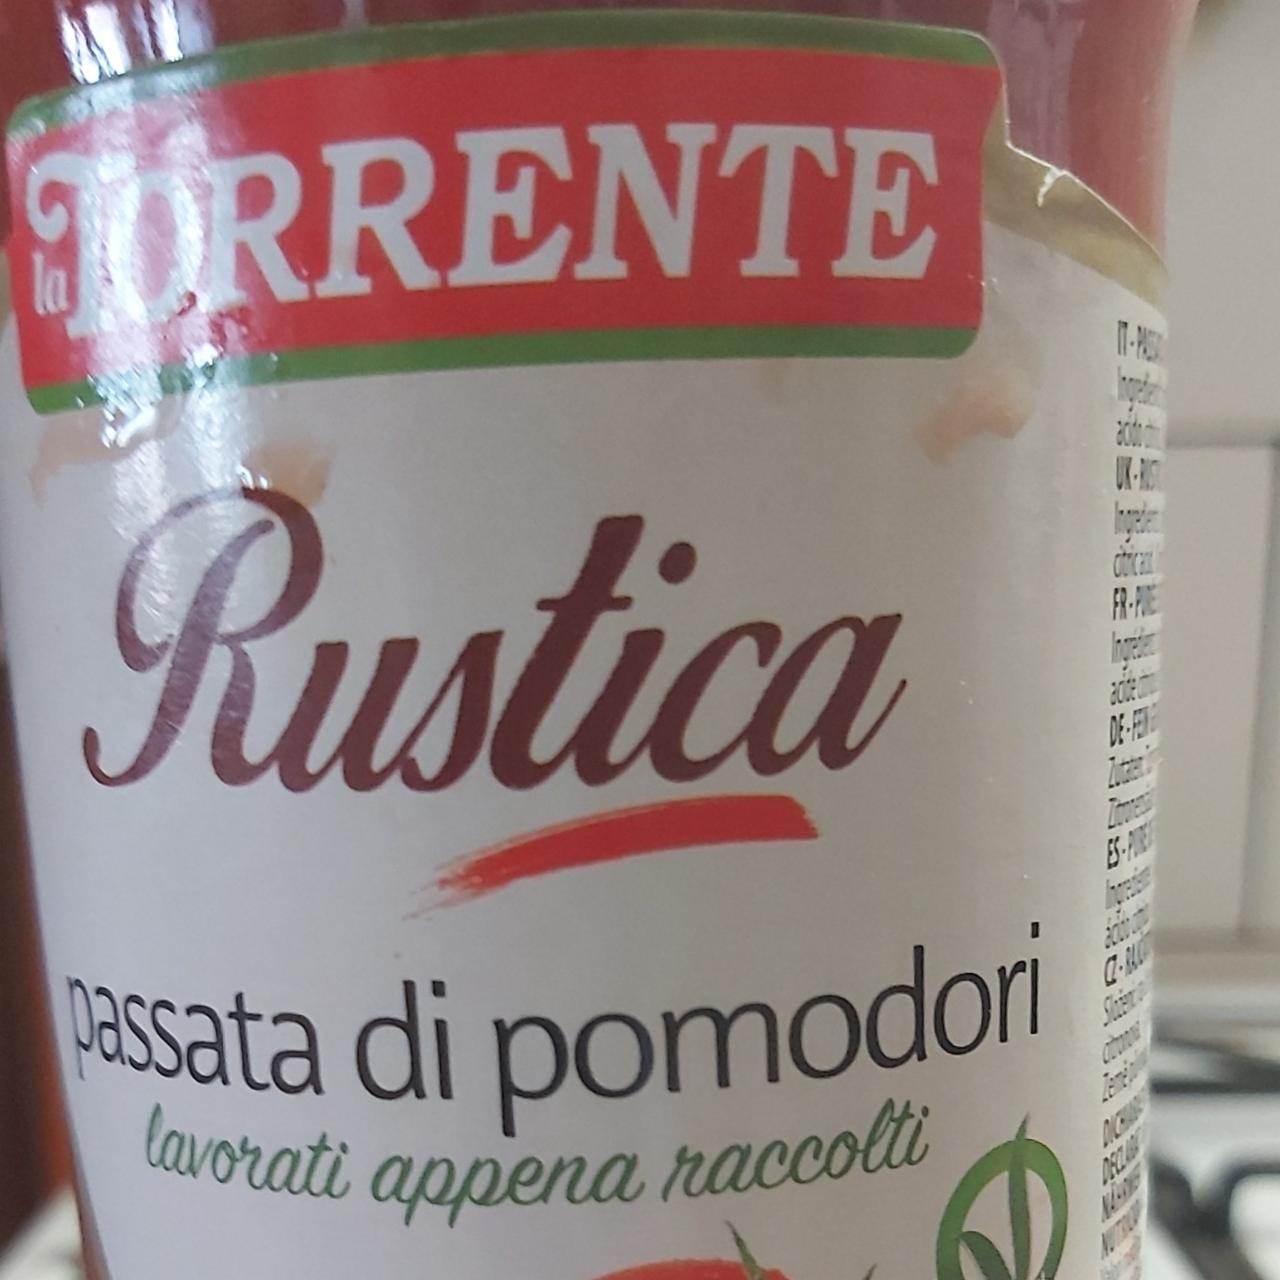 Fotografie - rustica passata do pomodori la Torrente